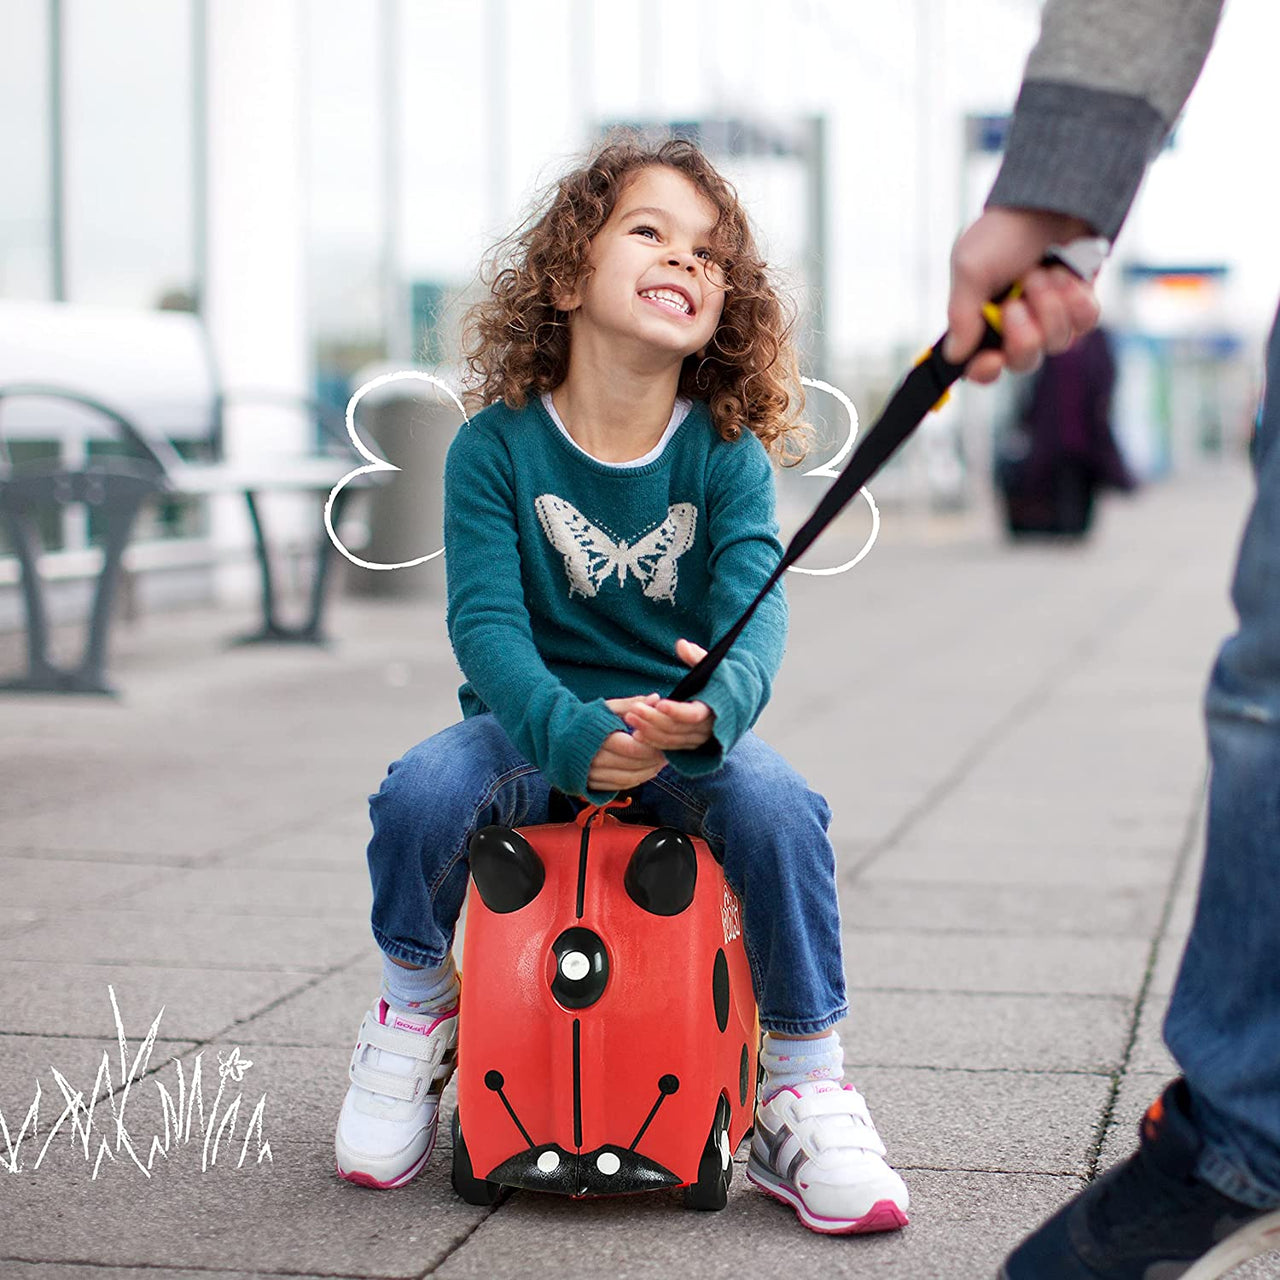 Ride-on kids suitcase - Harley Ladybug